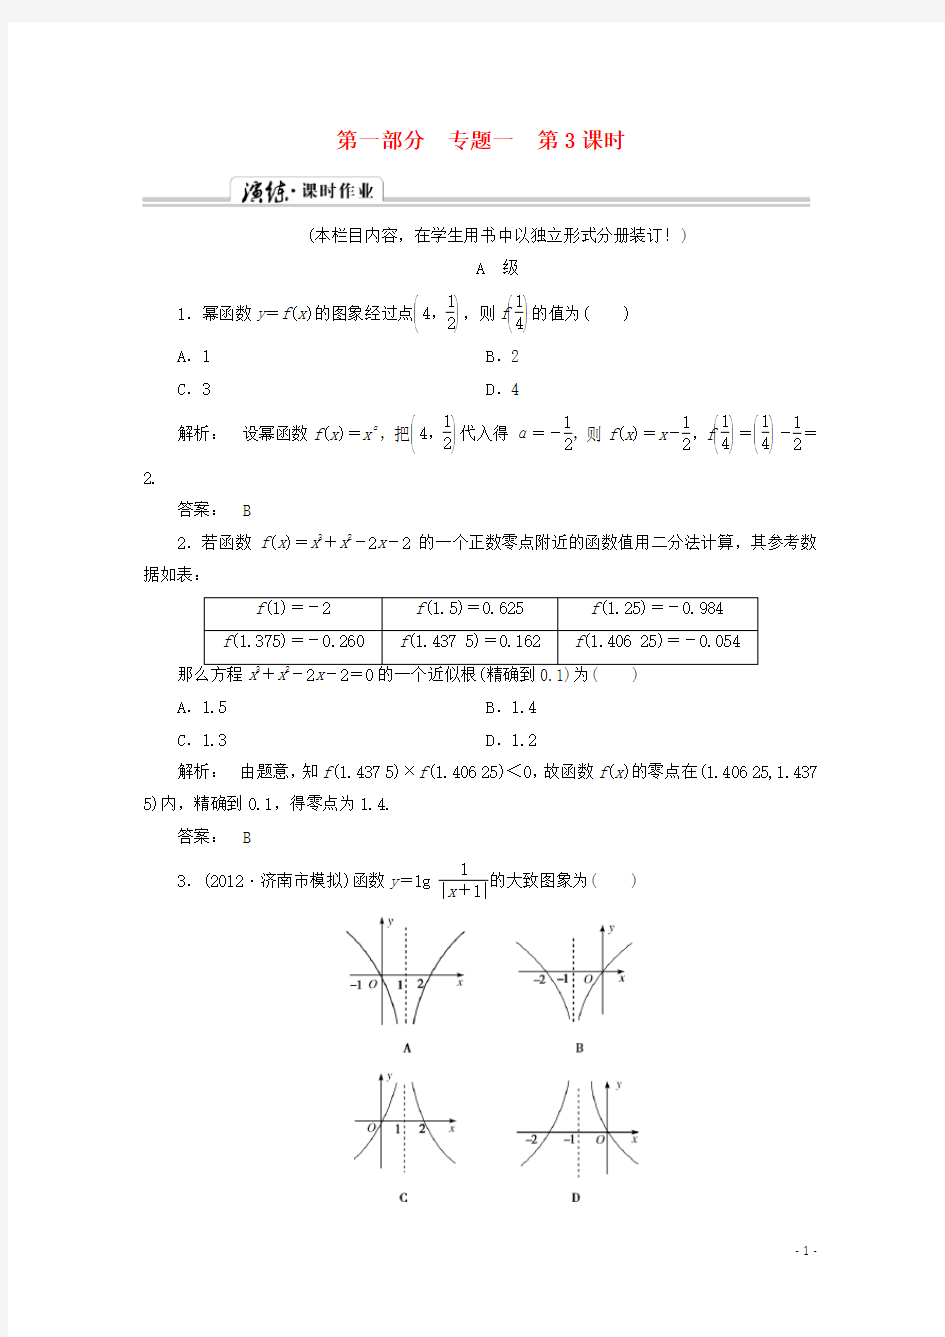 (拿高分 选好题)(新课程)高中数学二轮复习专题 第一部分《1-1-3 基本初等函数、函数与方程及函